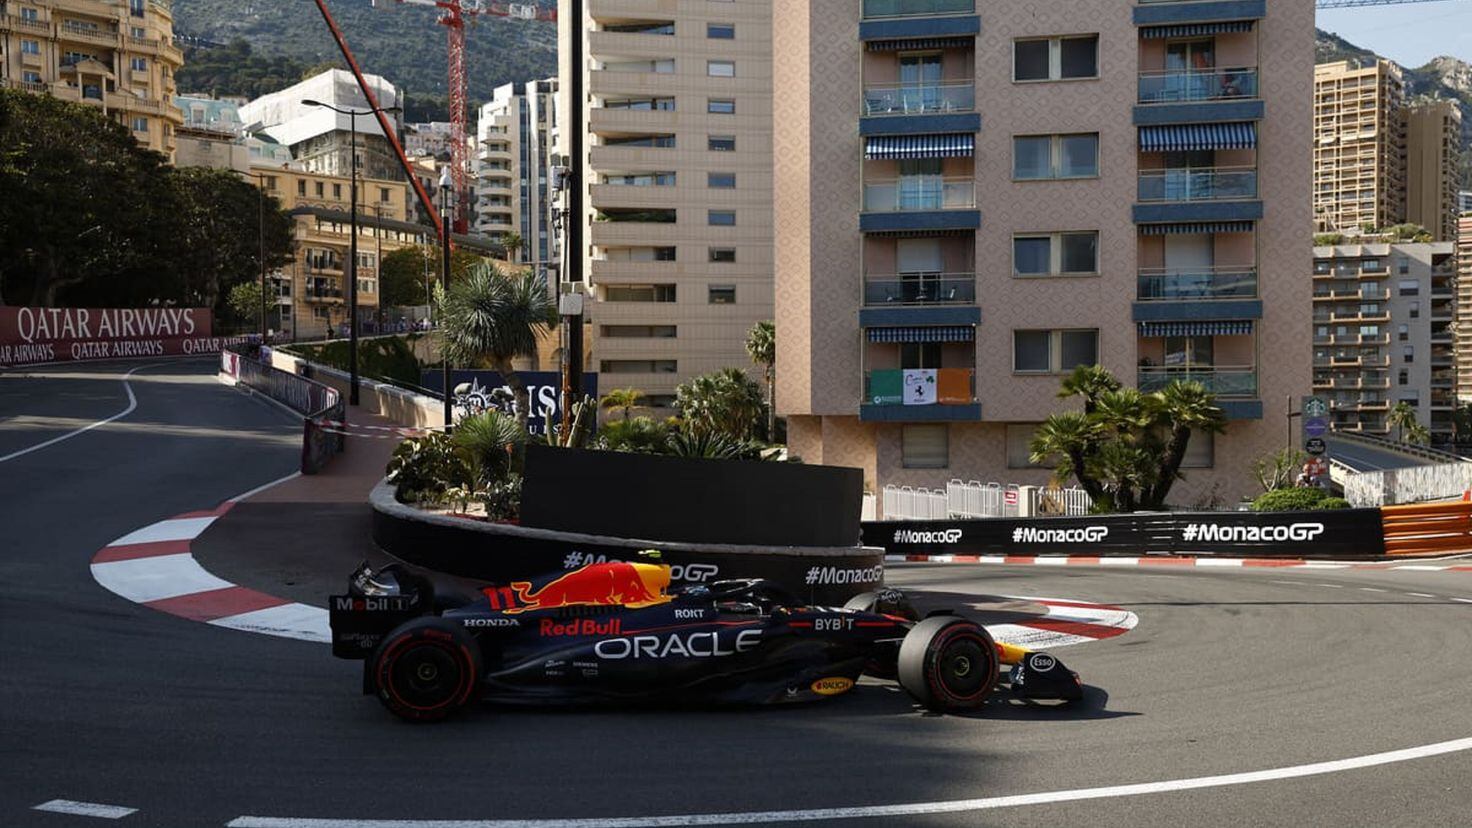 Monaco Formula 1 Grand Prix